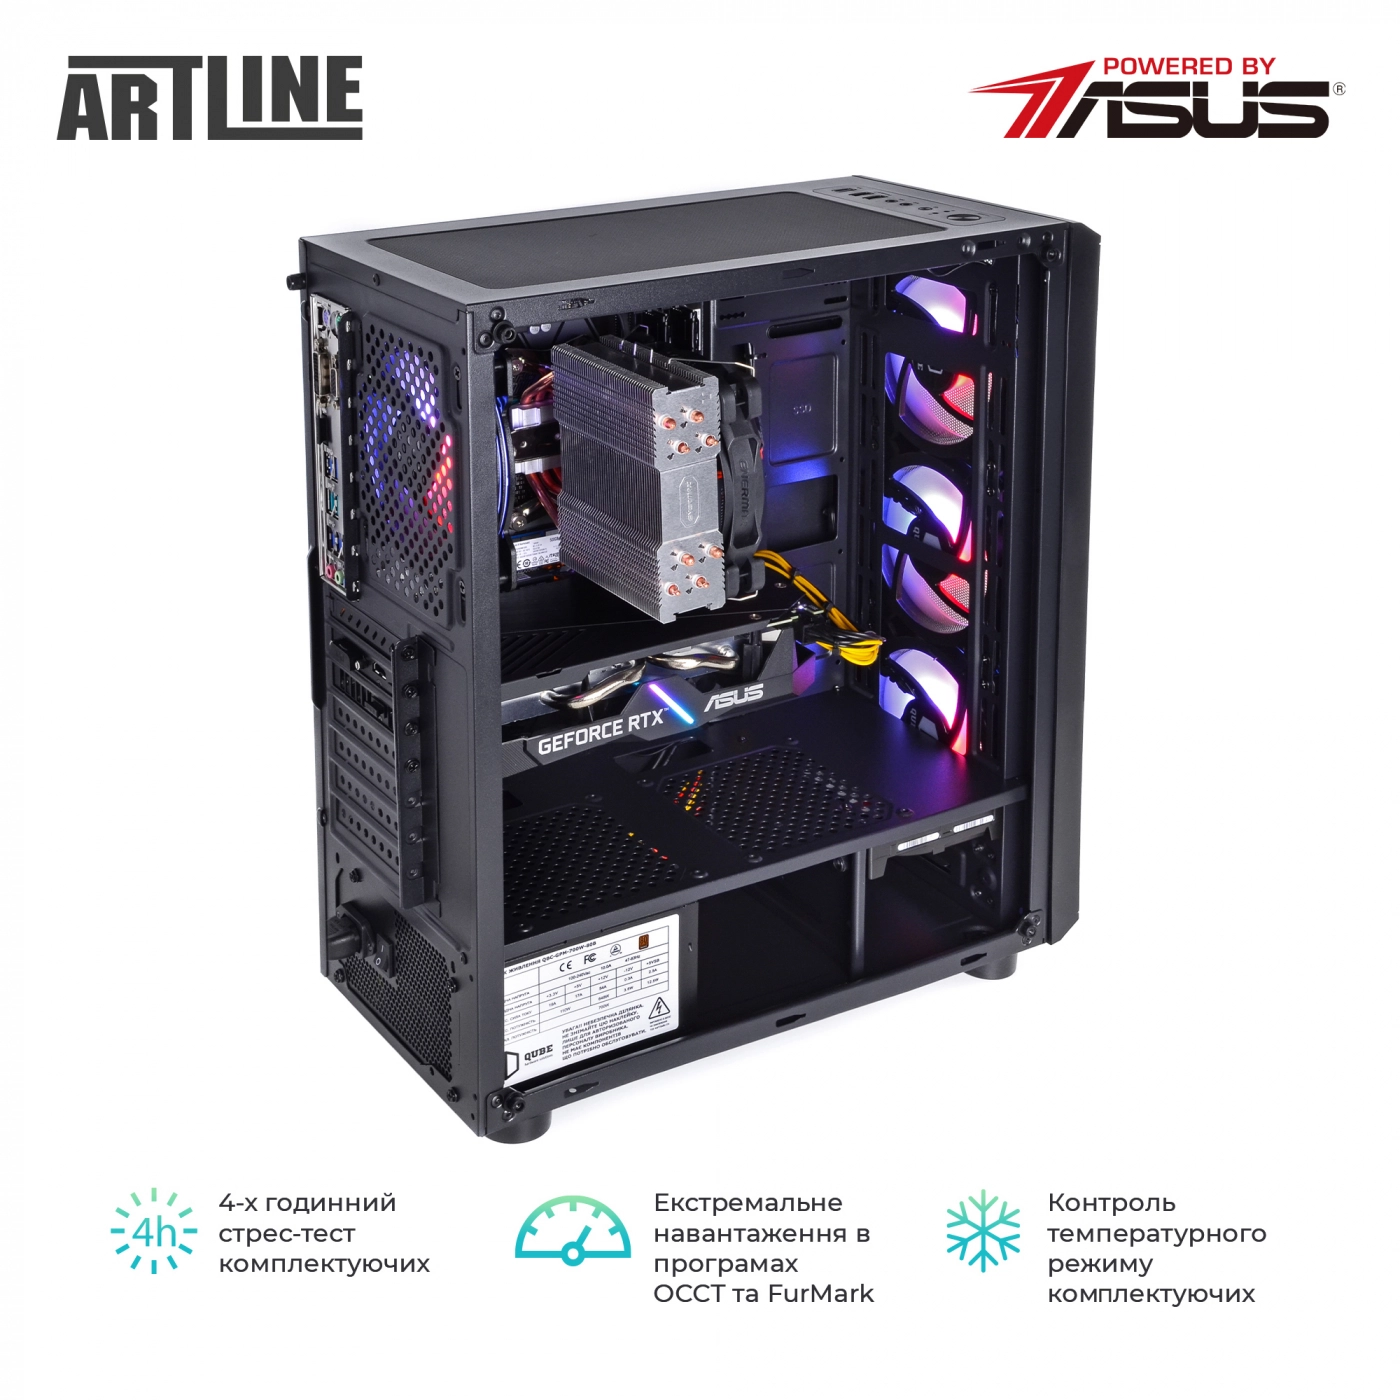 Купить Компьютер ARTLINE Gaming X75v56 - фото 8